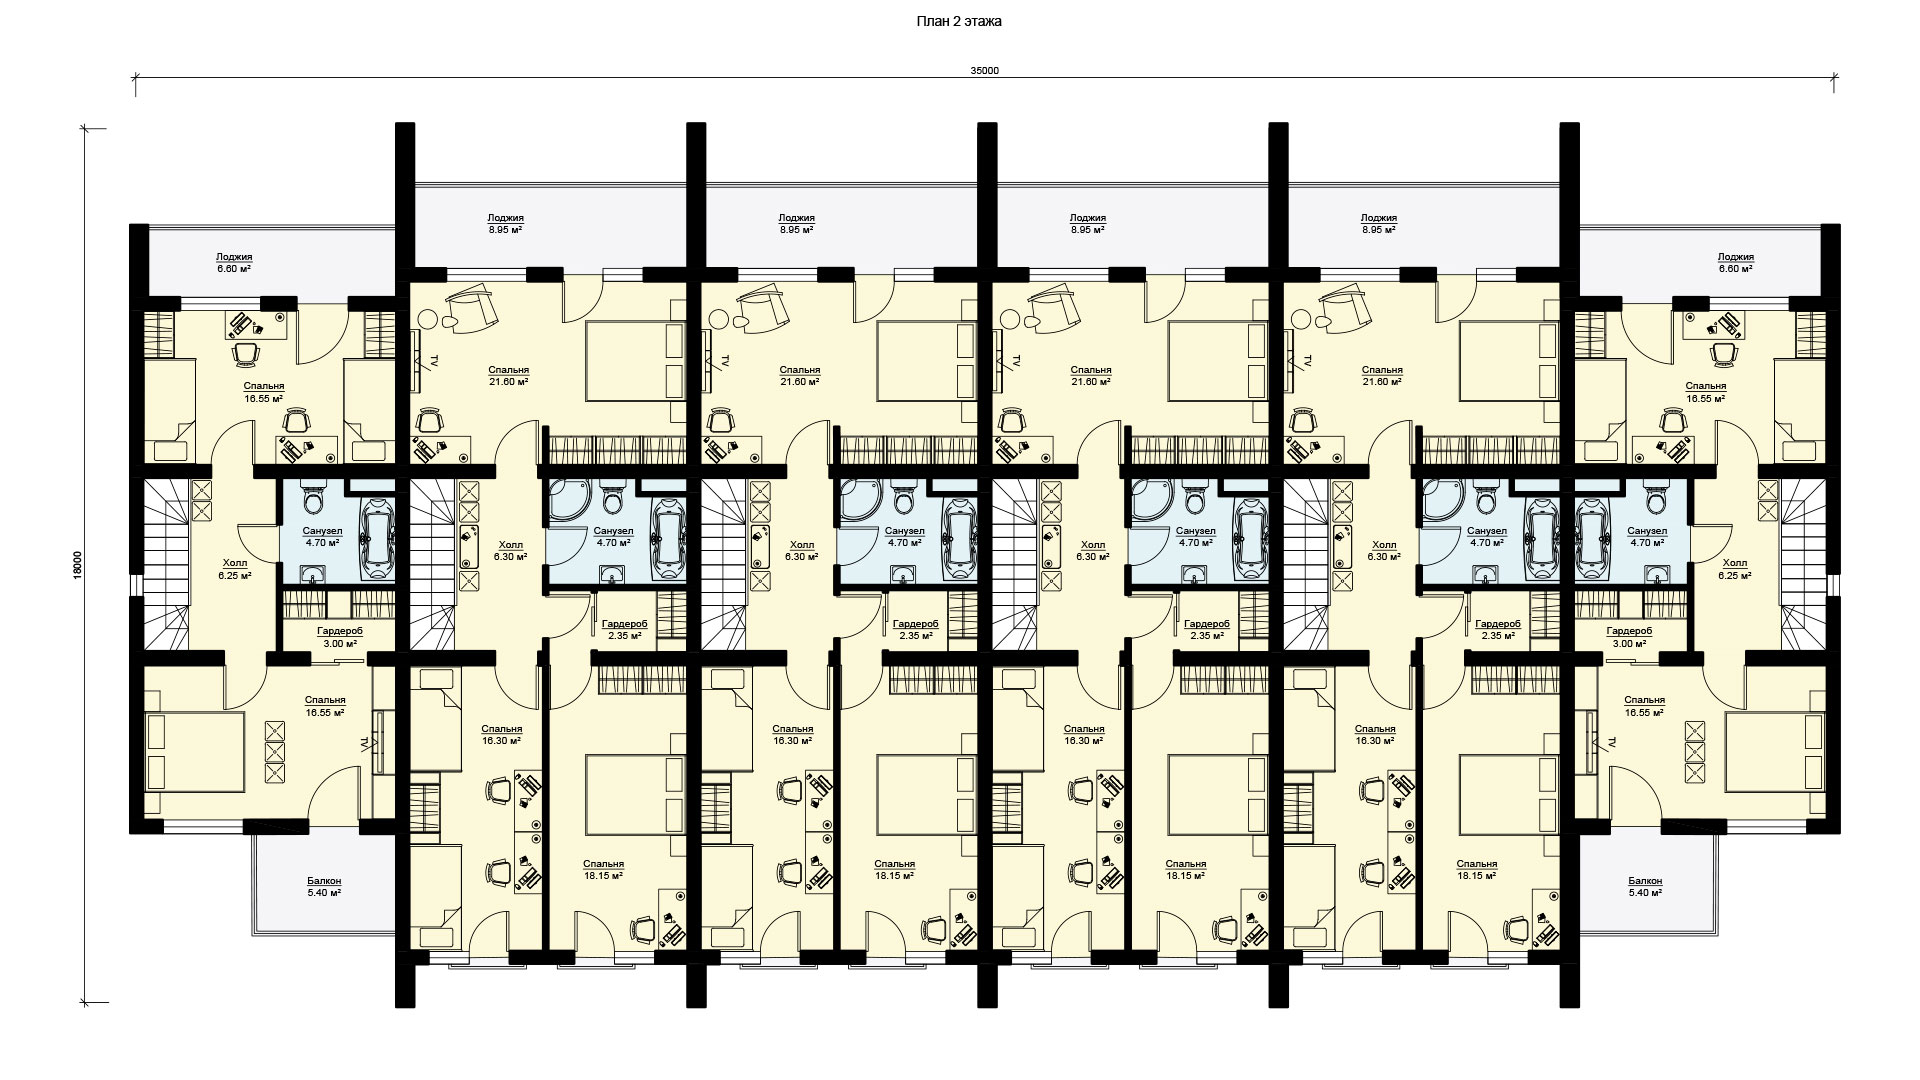 Планировка второго этажа таунхауса из шести двухэтажных квартир, проект БЭНПАН МС-1145.